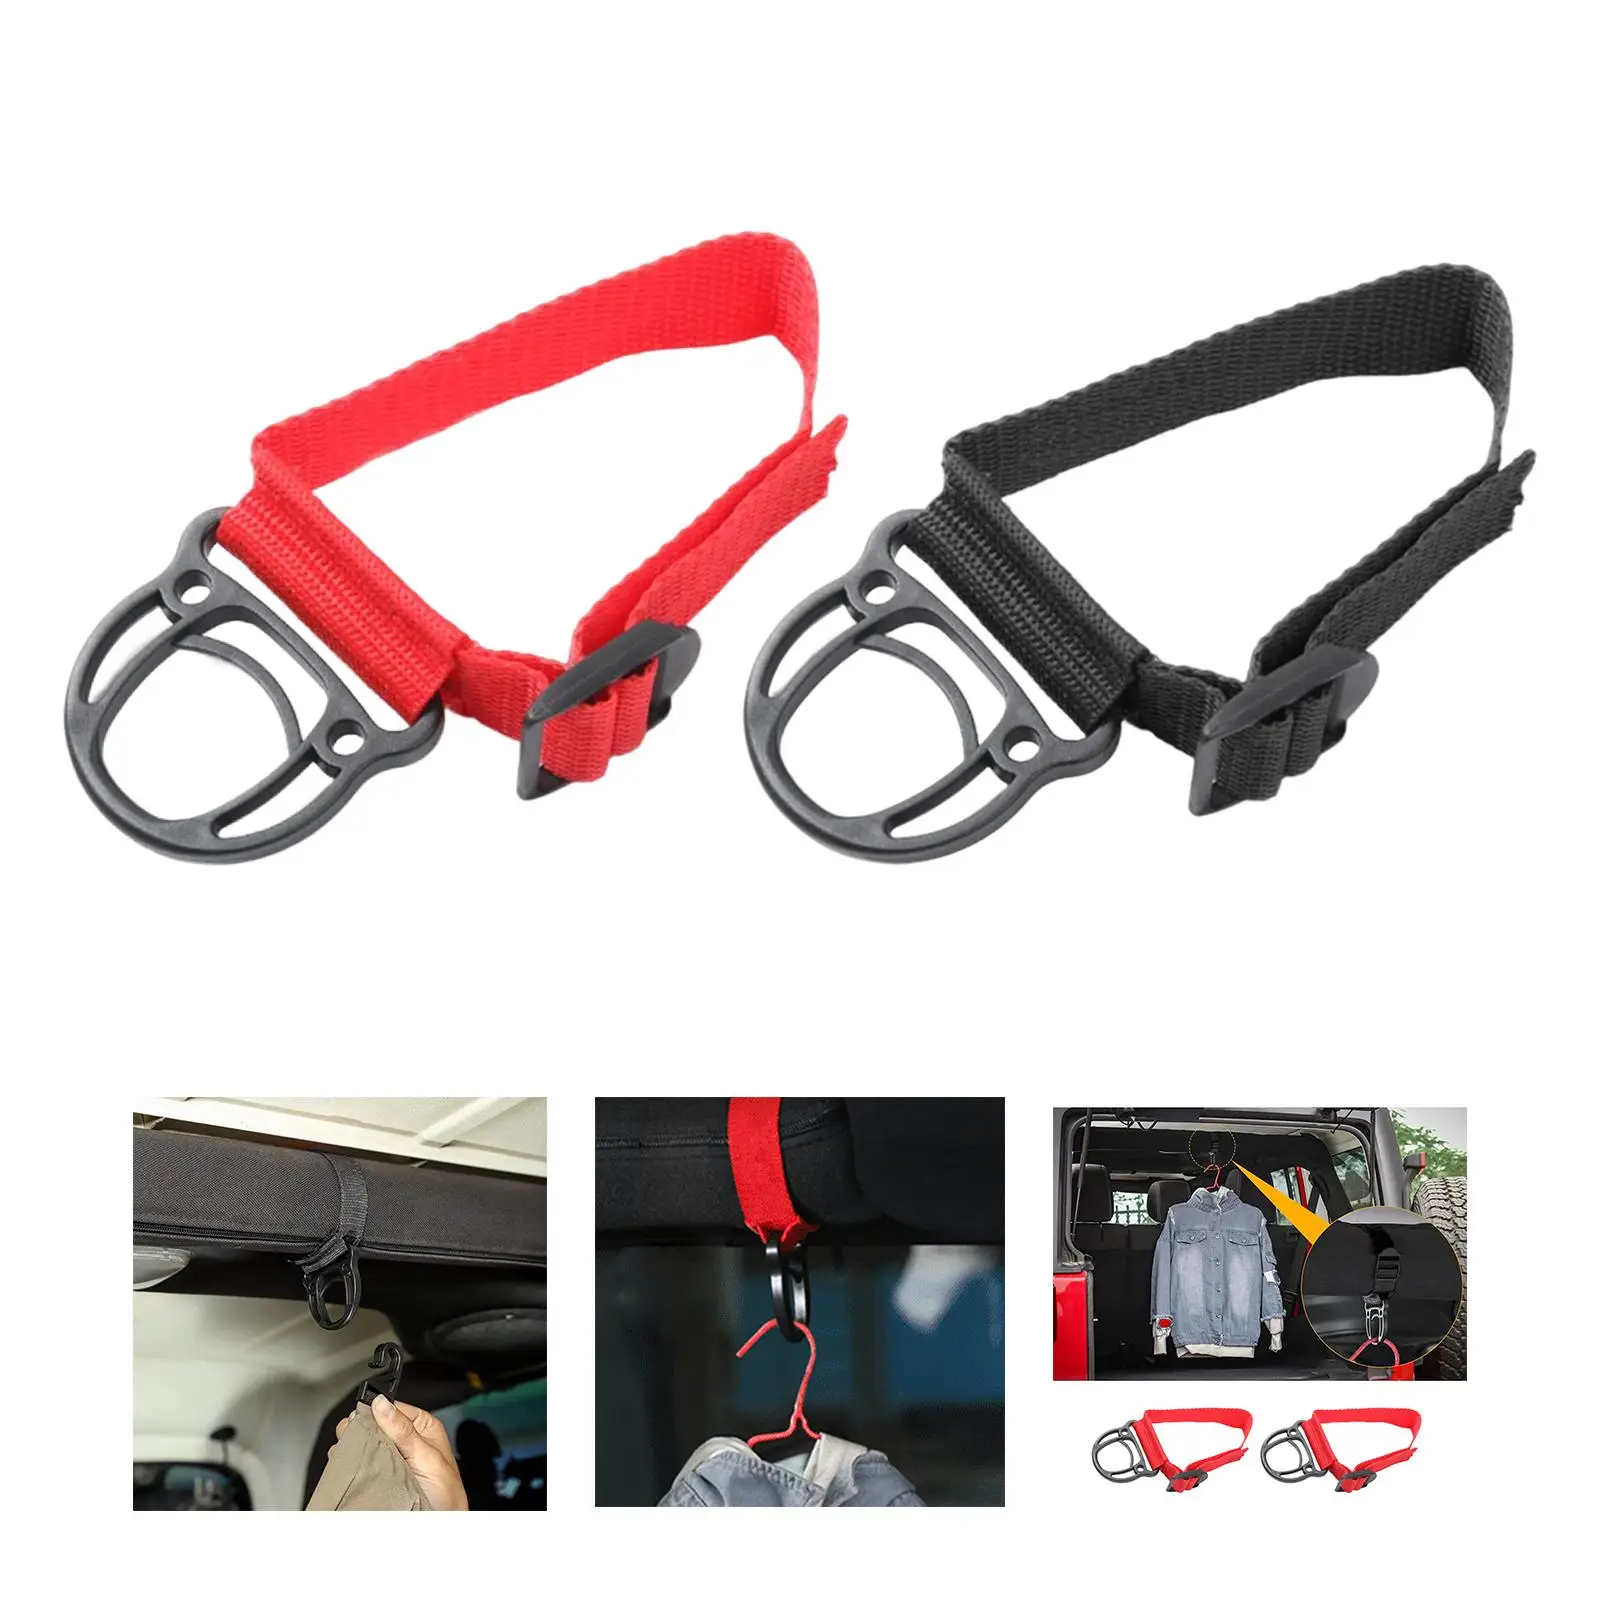 2Pcs Clothes Hook Accessories Roll Bar Coat Jacket Hanger for Car Suvs Camping